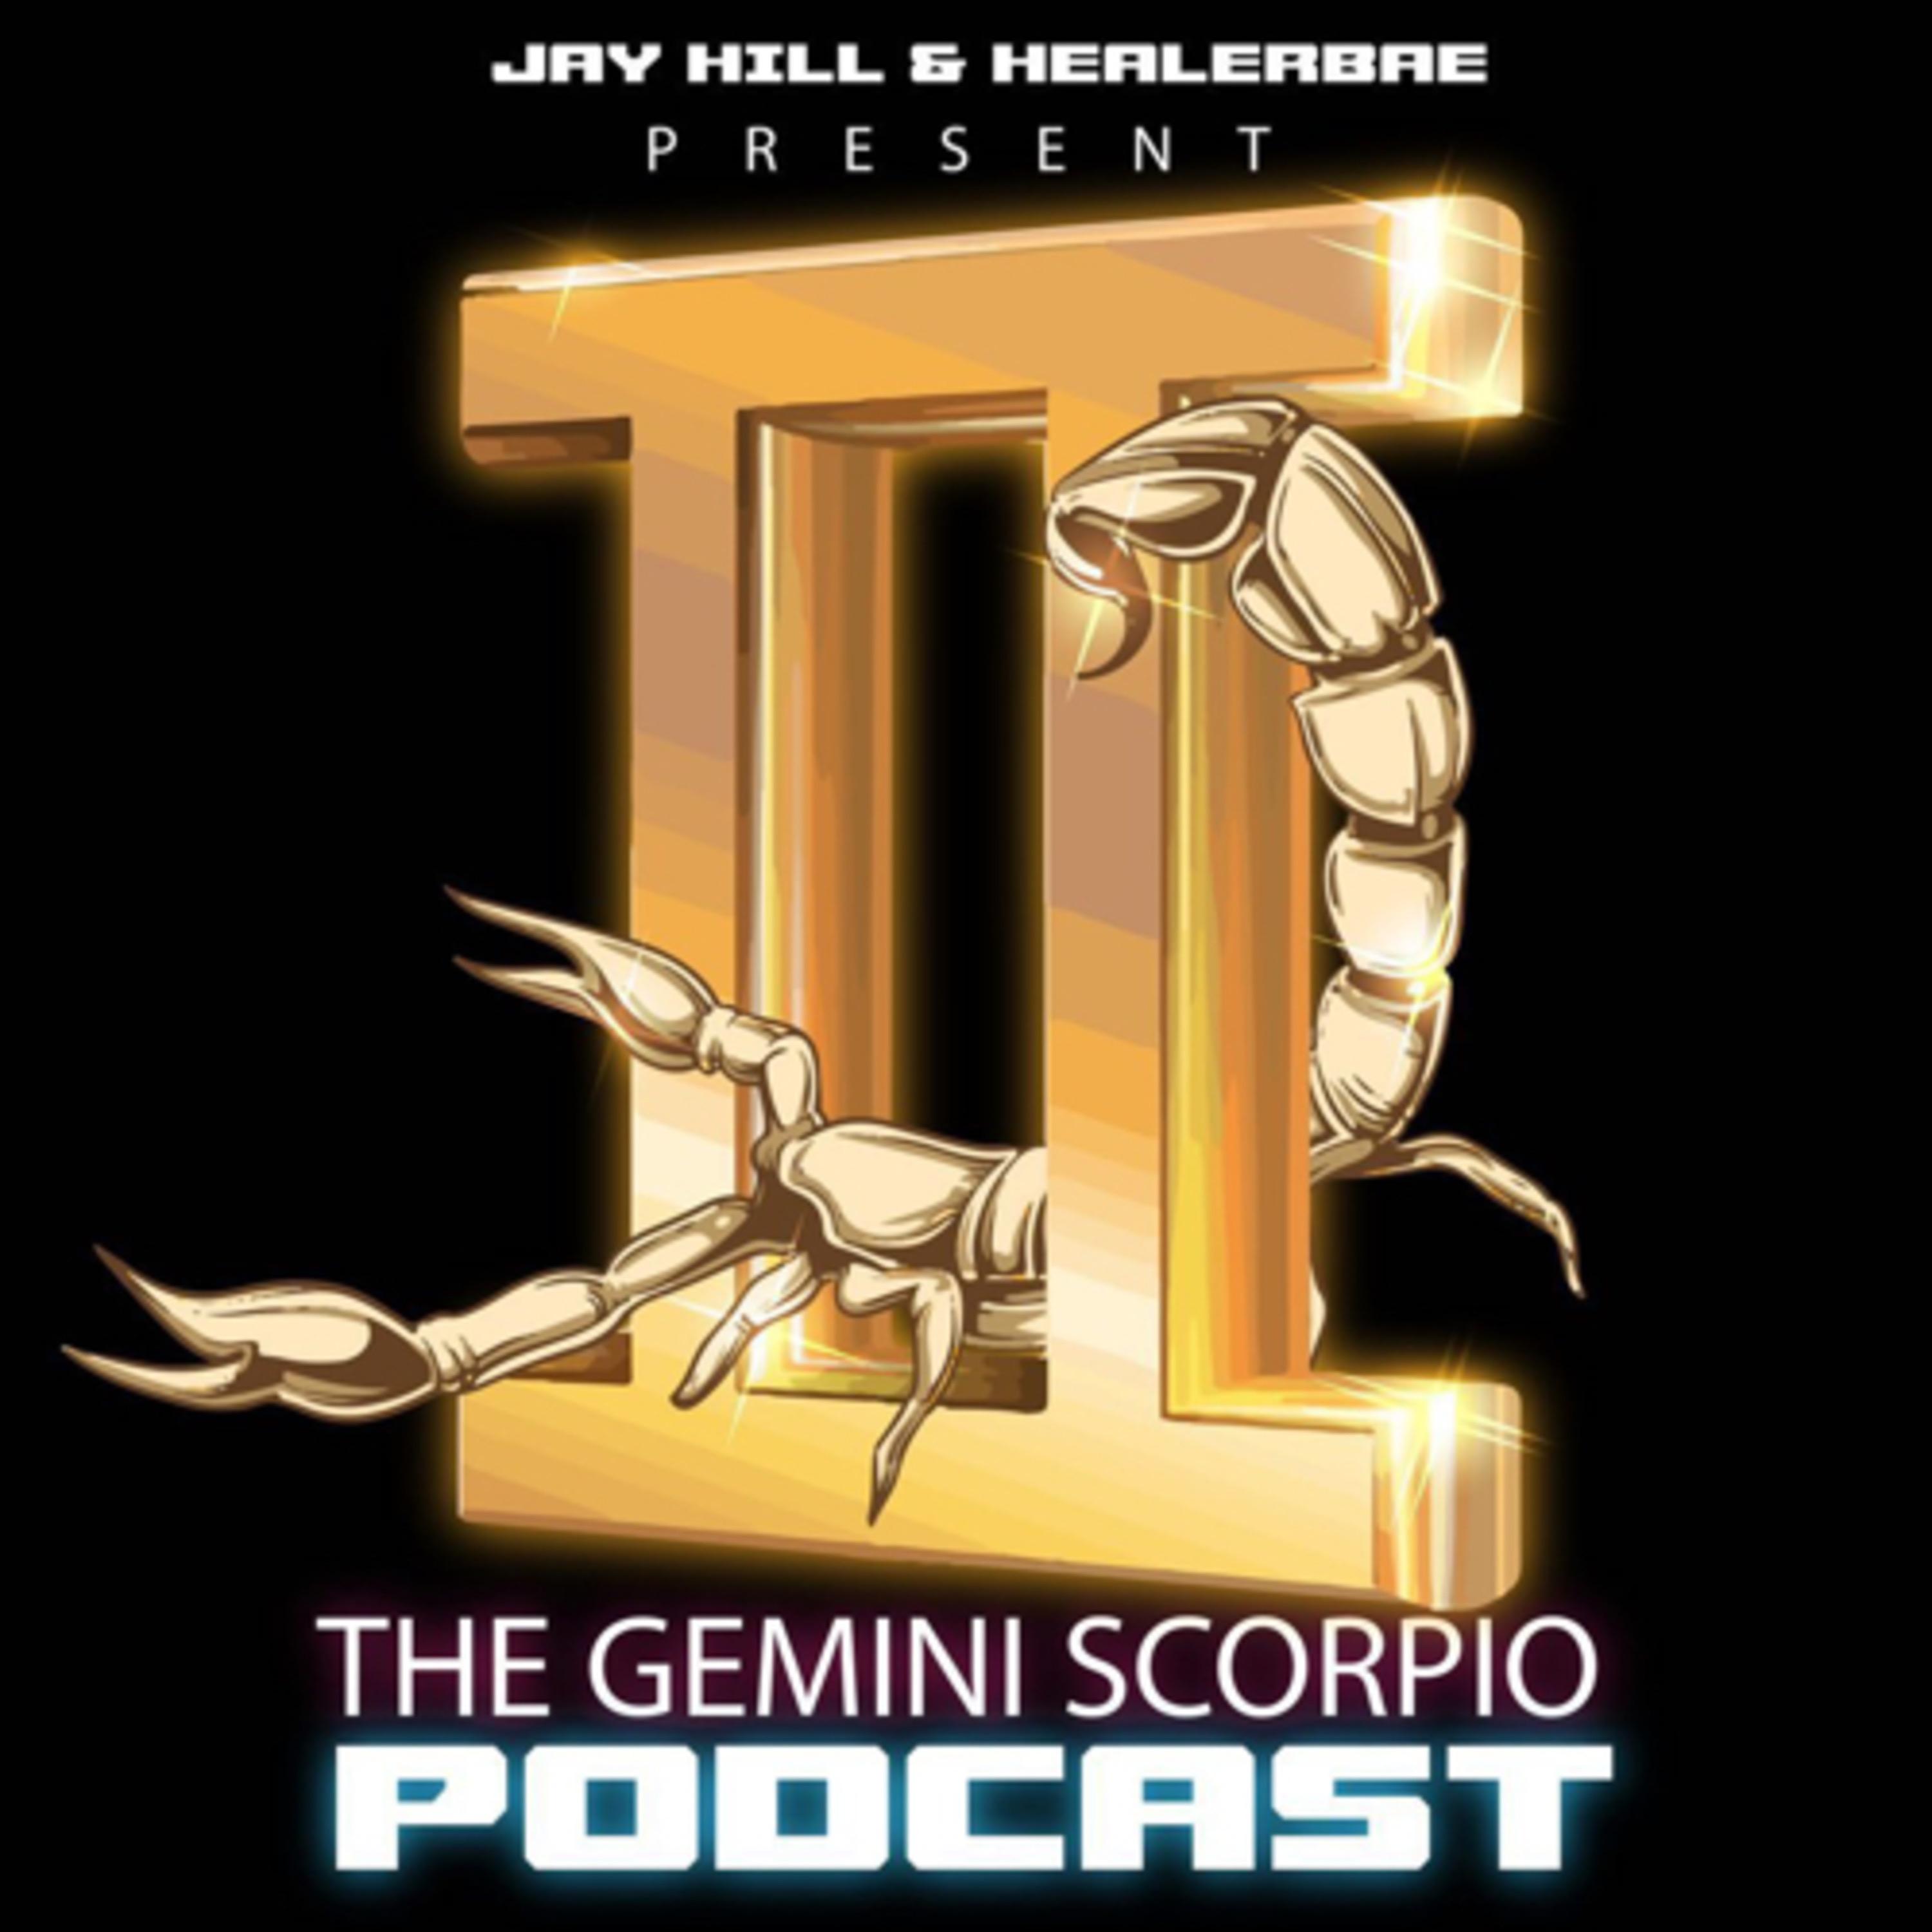 The Gemini Scorpio Podcast